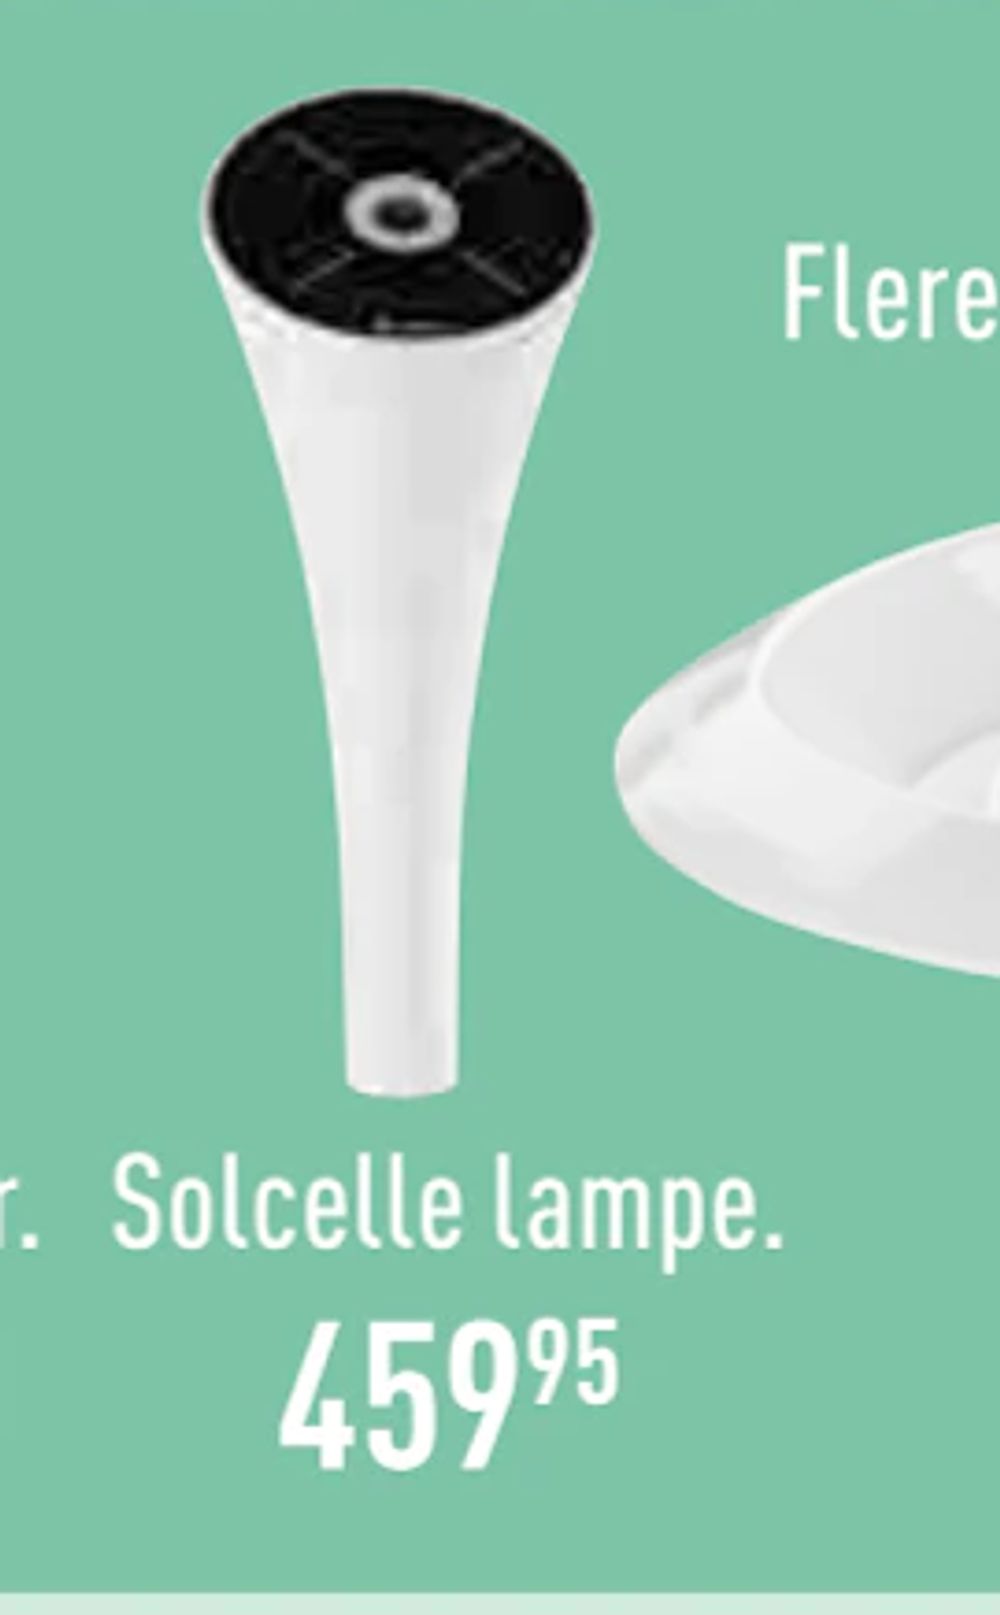 Tilbud på Solcelle lampe fra Imerco til 459,95 kr.